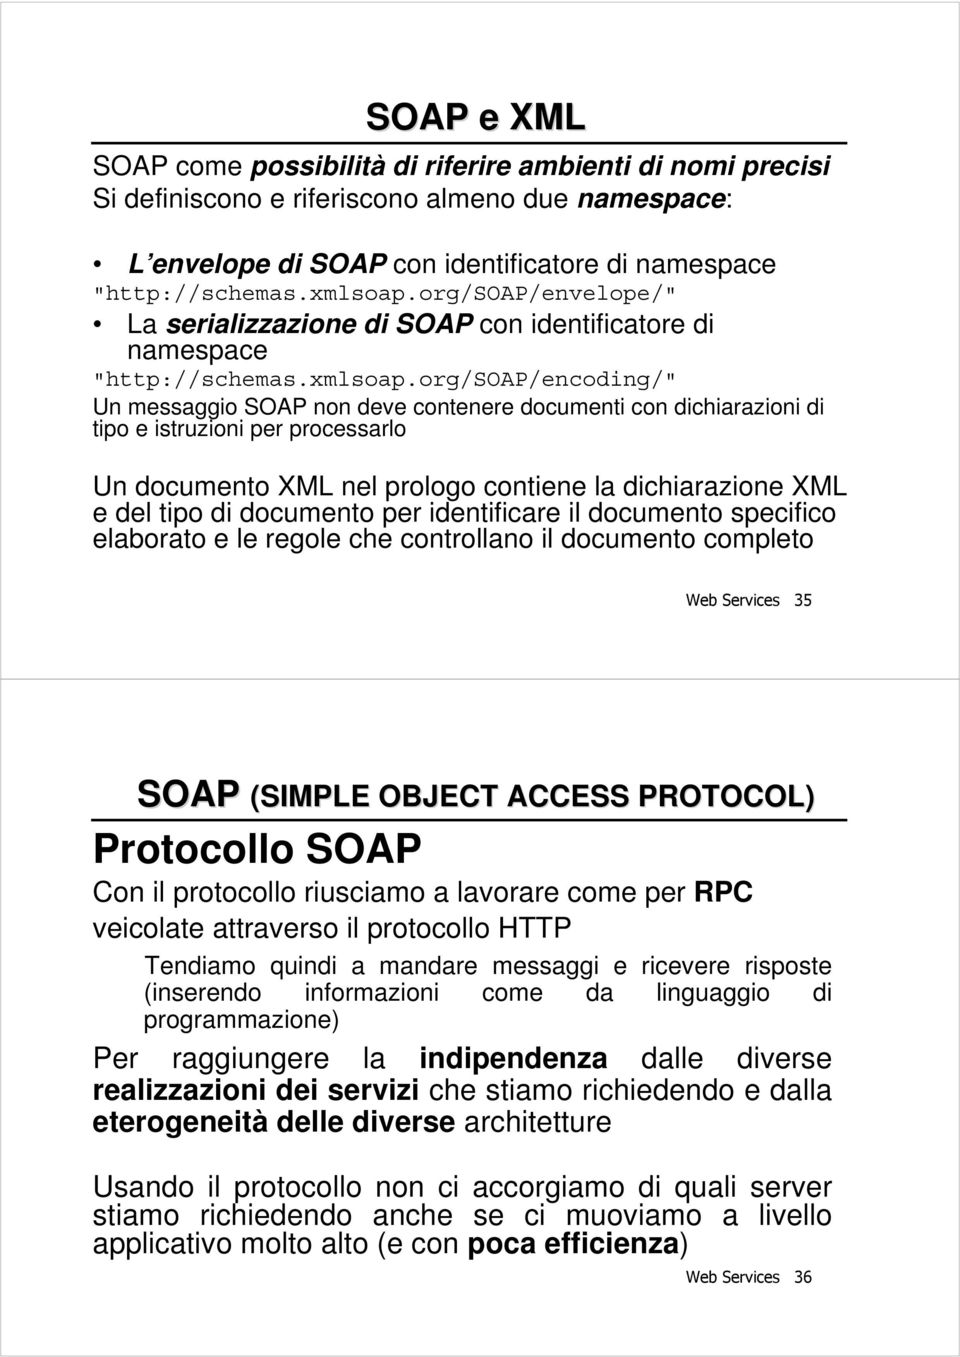 org/soap/encoding/" Un messaggio SOAP non deve contenere documenti con dichiarazioni di tipo e istruzioni per processarlo Un documento XML nel prologo contiene la dichiarazione XML e del tipo di